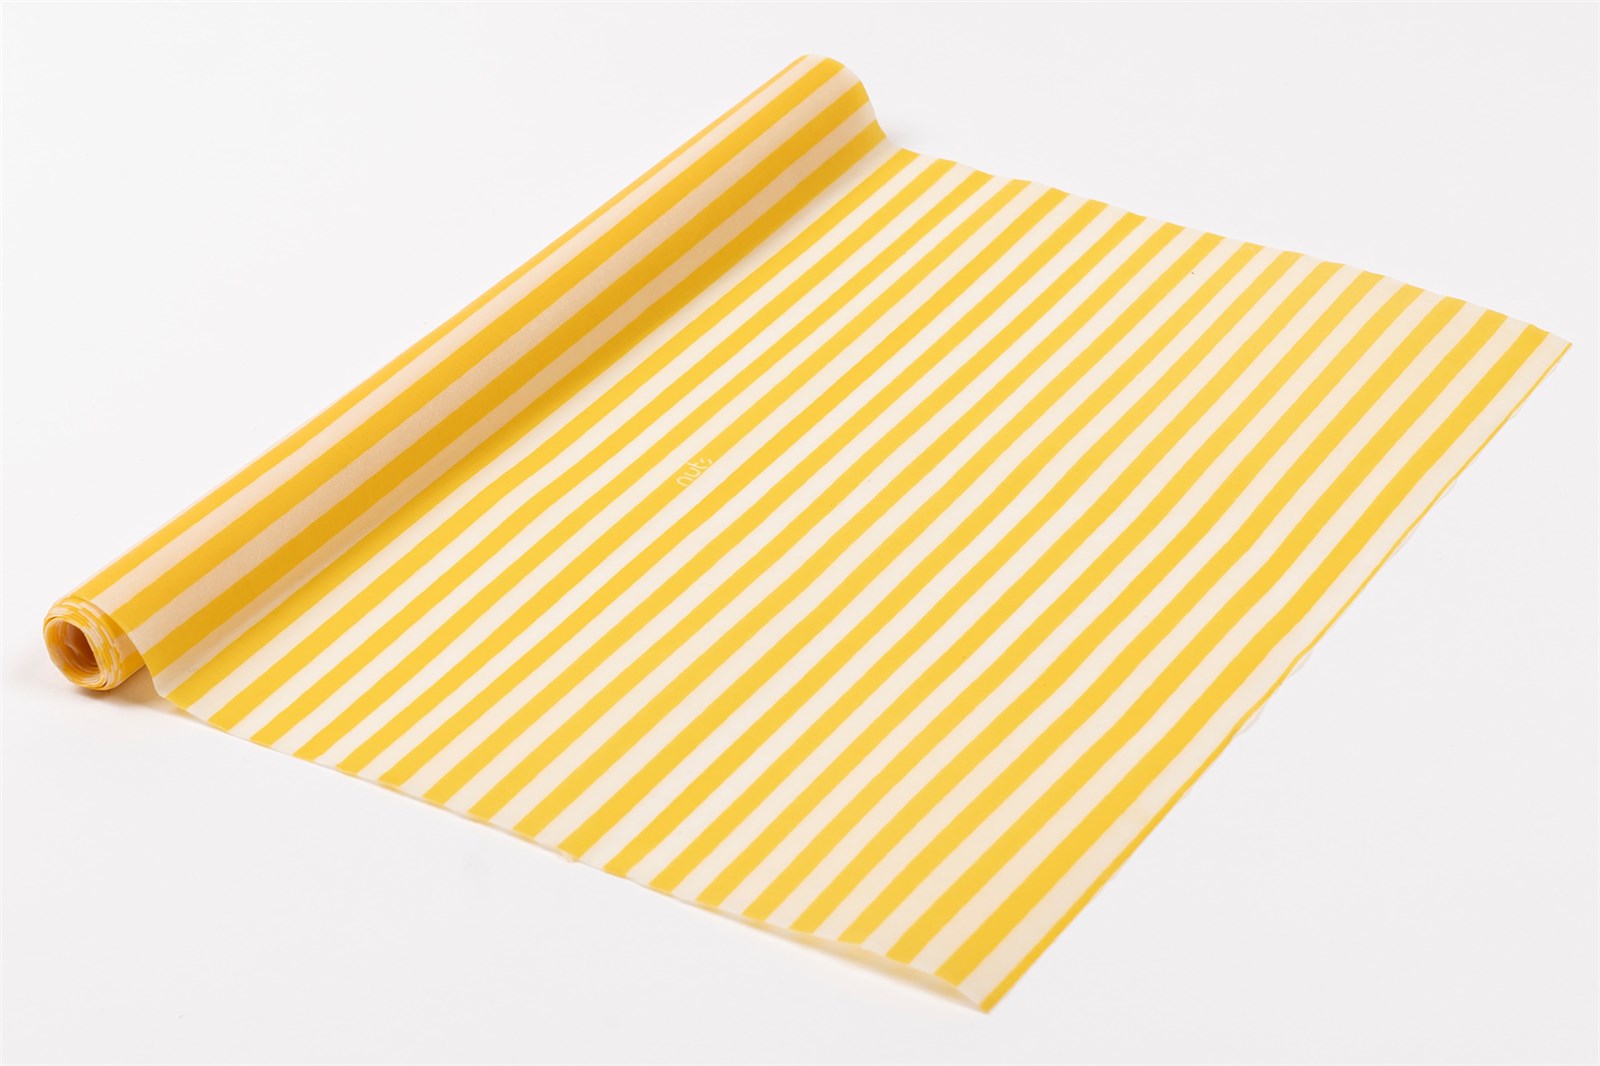 Bienenwachstuch-Rolle Streifen gelb/weiss 30.5x90cm - KAQTU Design